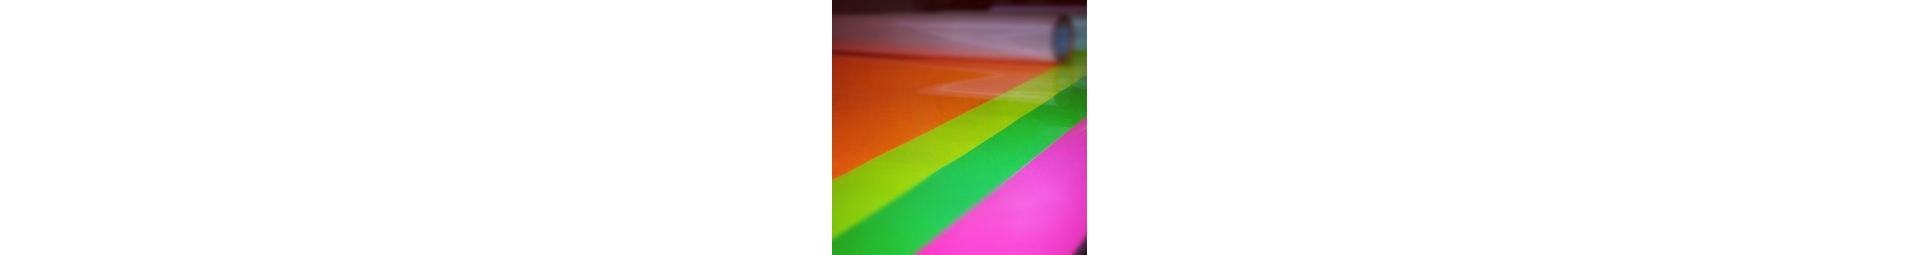 Fluorescent vinyl in 5 knalkleuren